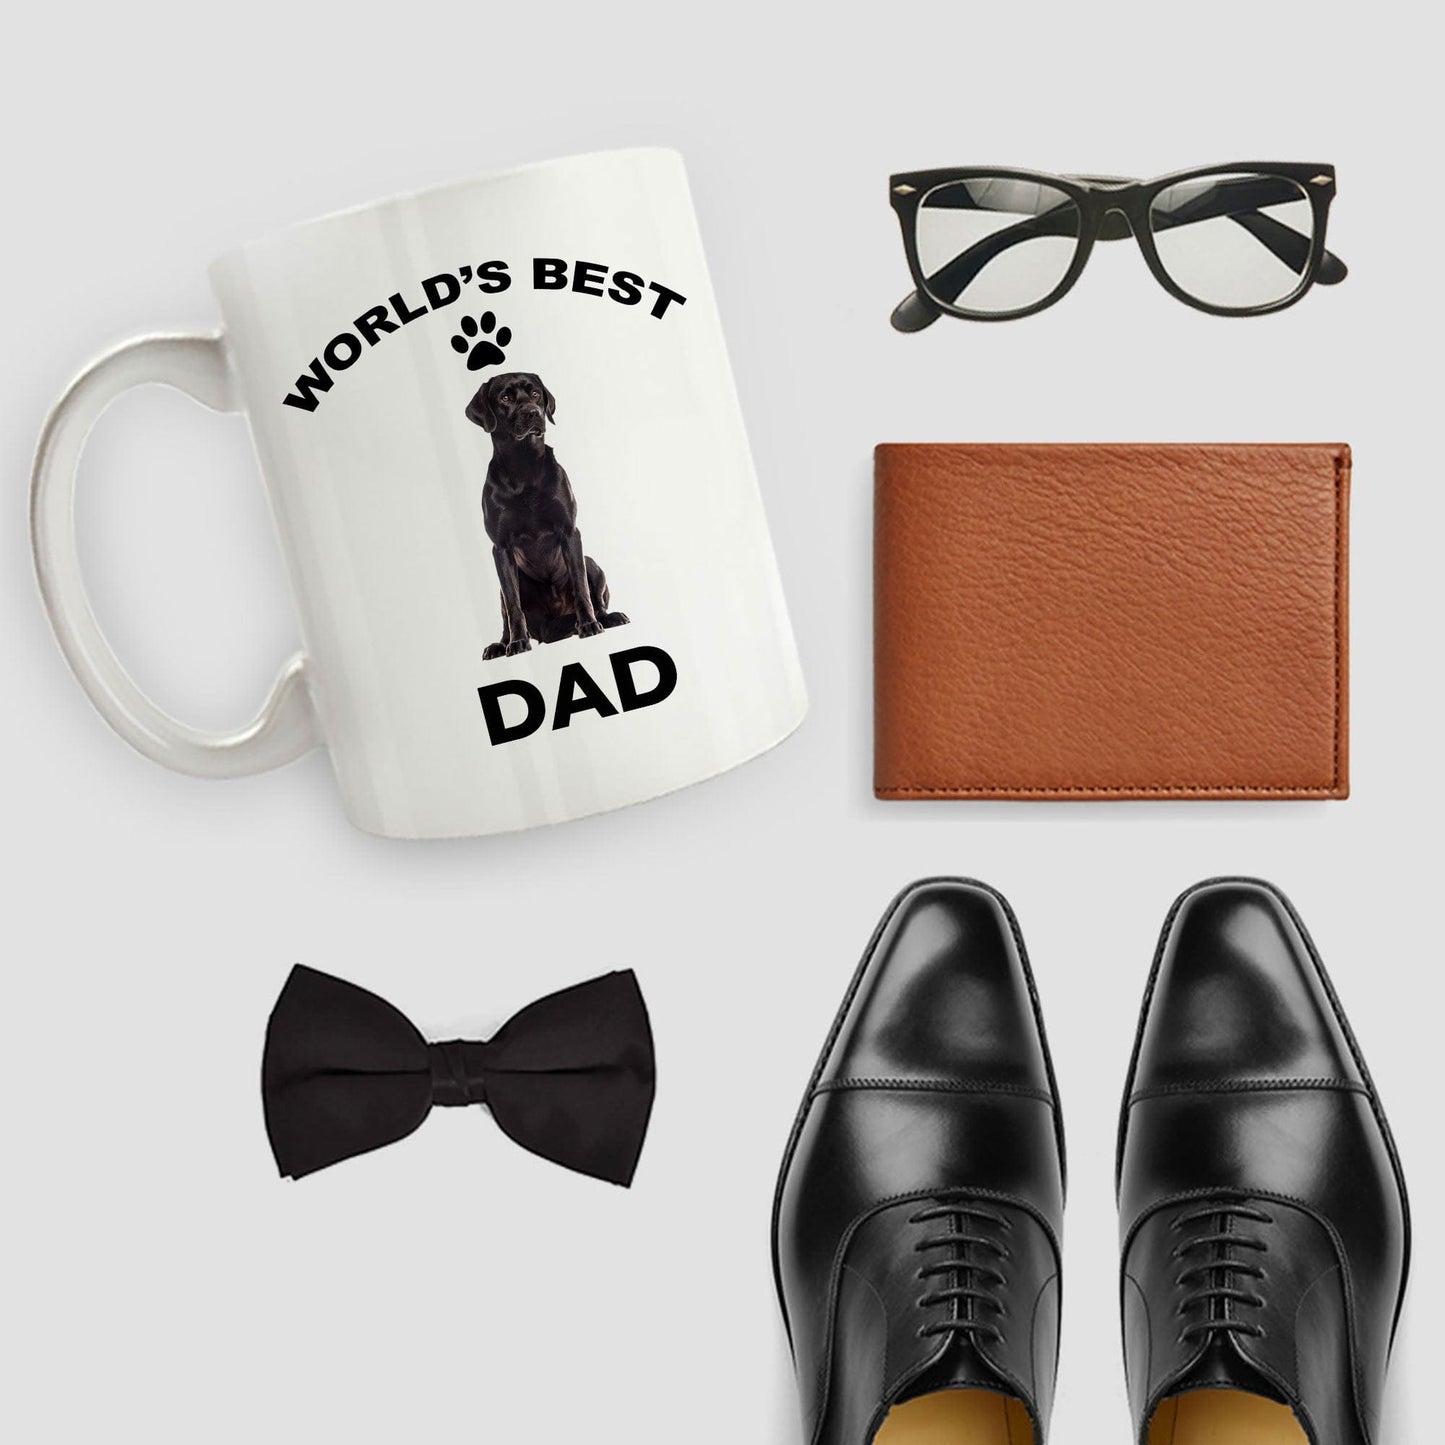 Black Labrador Retriever Best Dad Coffee Mug